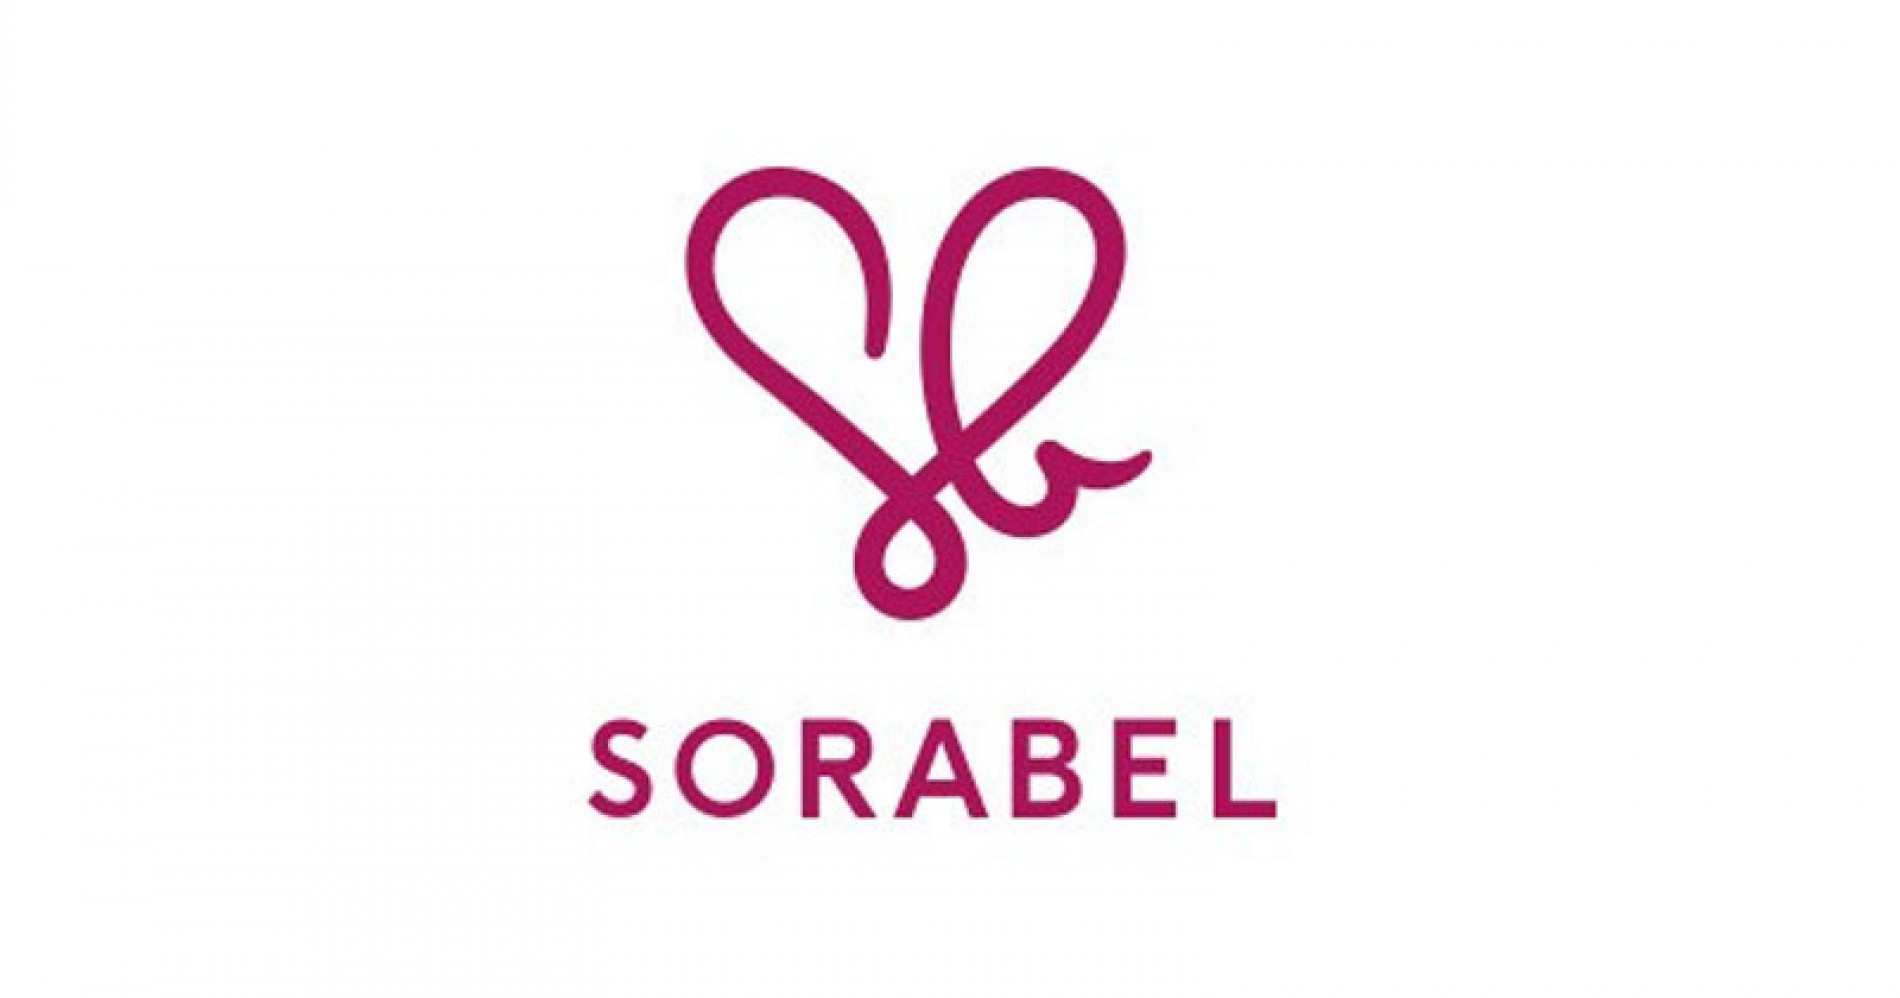 Sorabel Tutup Operasional (Format: Pixabay.com)